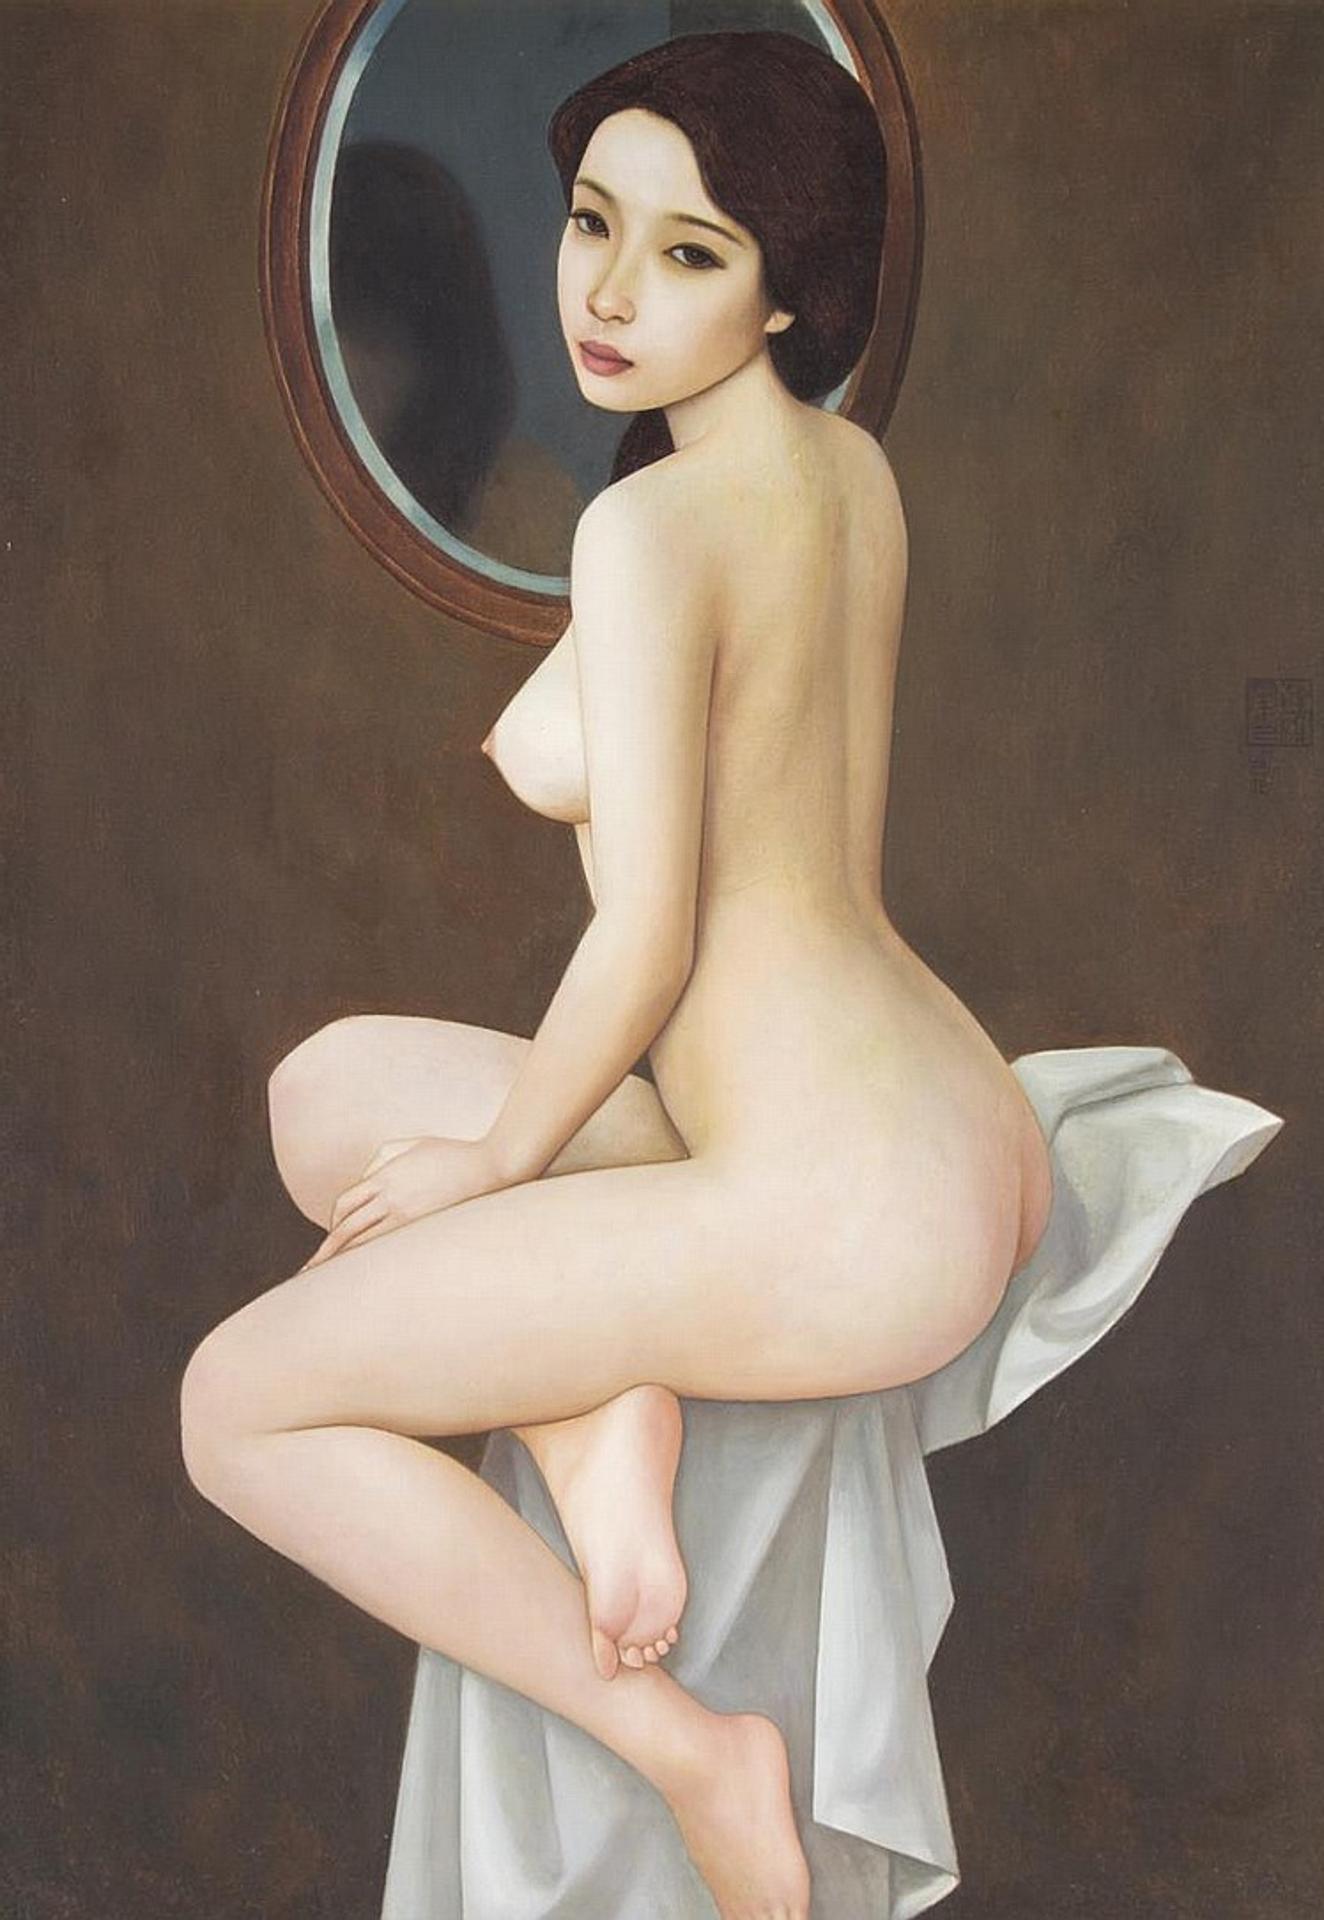 Xue Yan Qun (1953) - The Girl in the Mirror